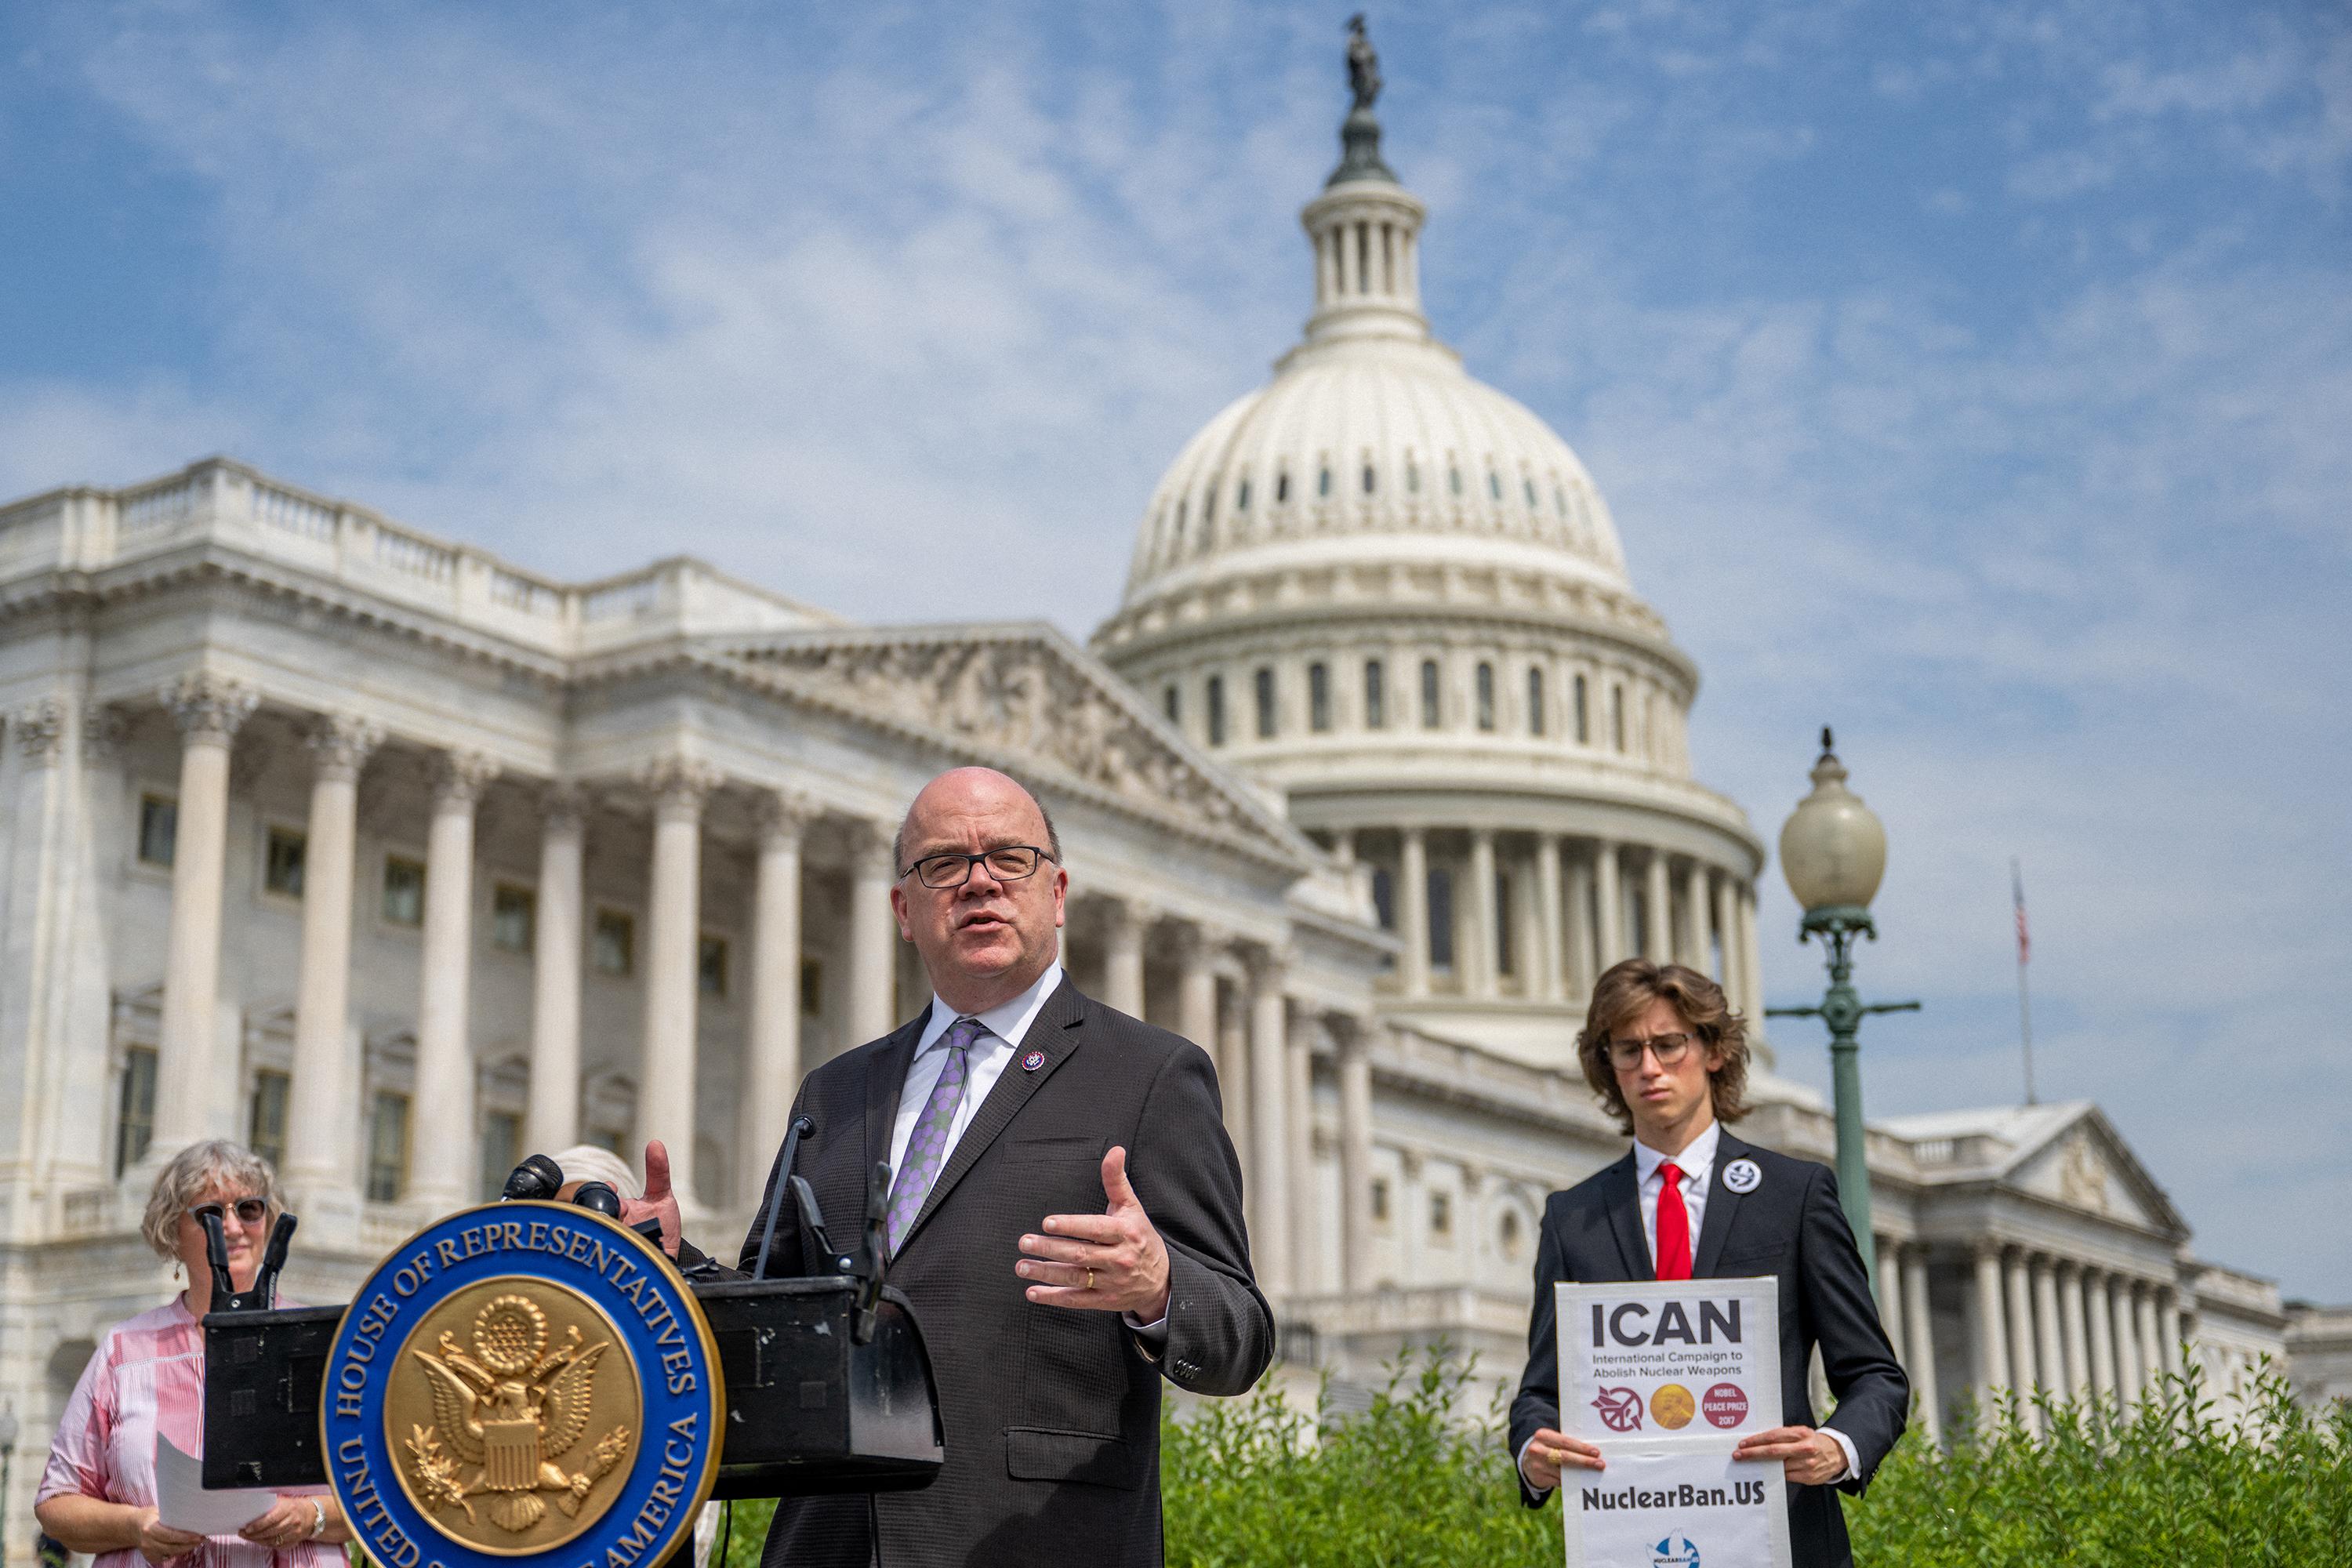 El representante estadounidense, Jim McGovern, habla durante una conferencia de prensa el 22 de junio de 2022 en Washington, DC., donde pidió a los EE. UU. que se unan a un tratado sobre la prohibición de las armas nucleares. Foto de El Faro: Brandon Bell/ Getty Images/ AFP.